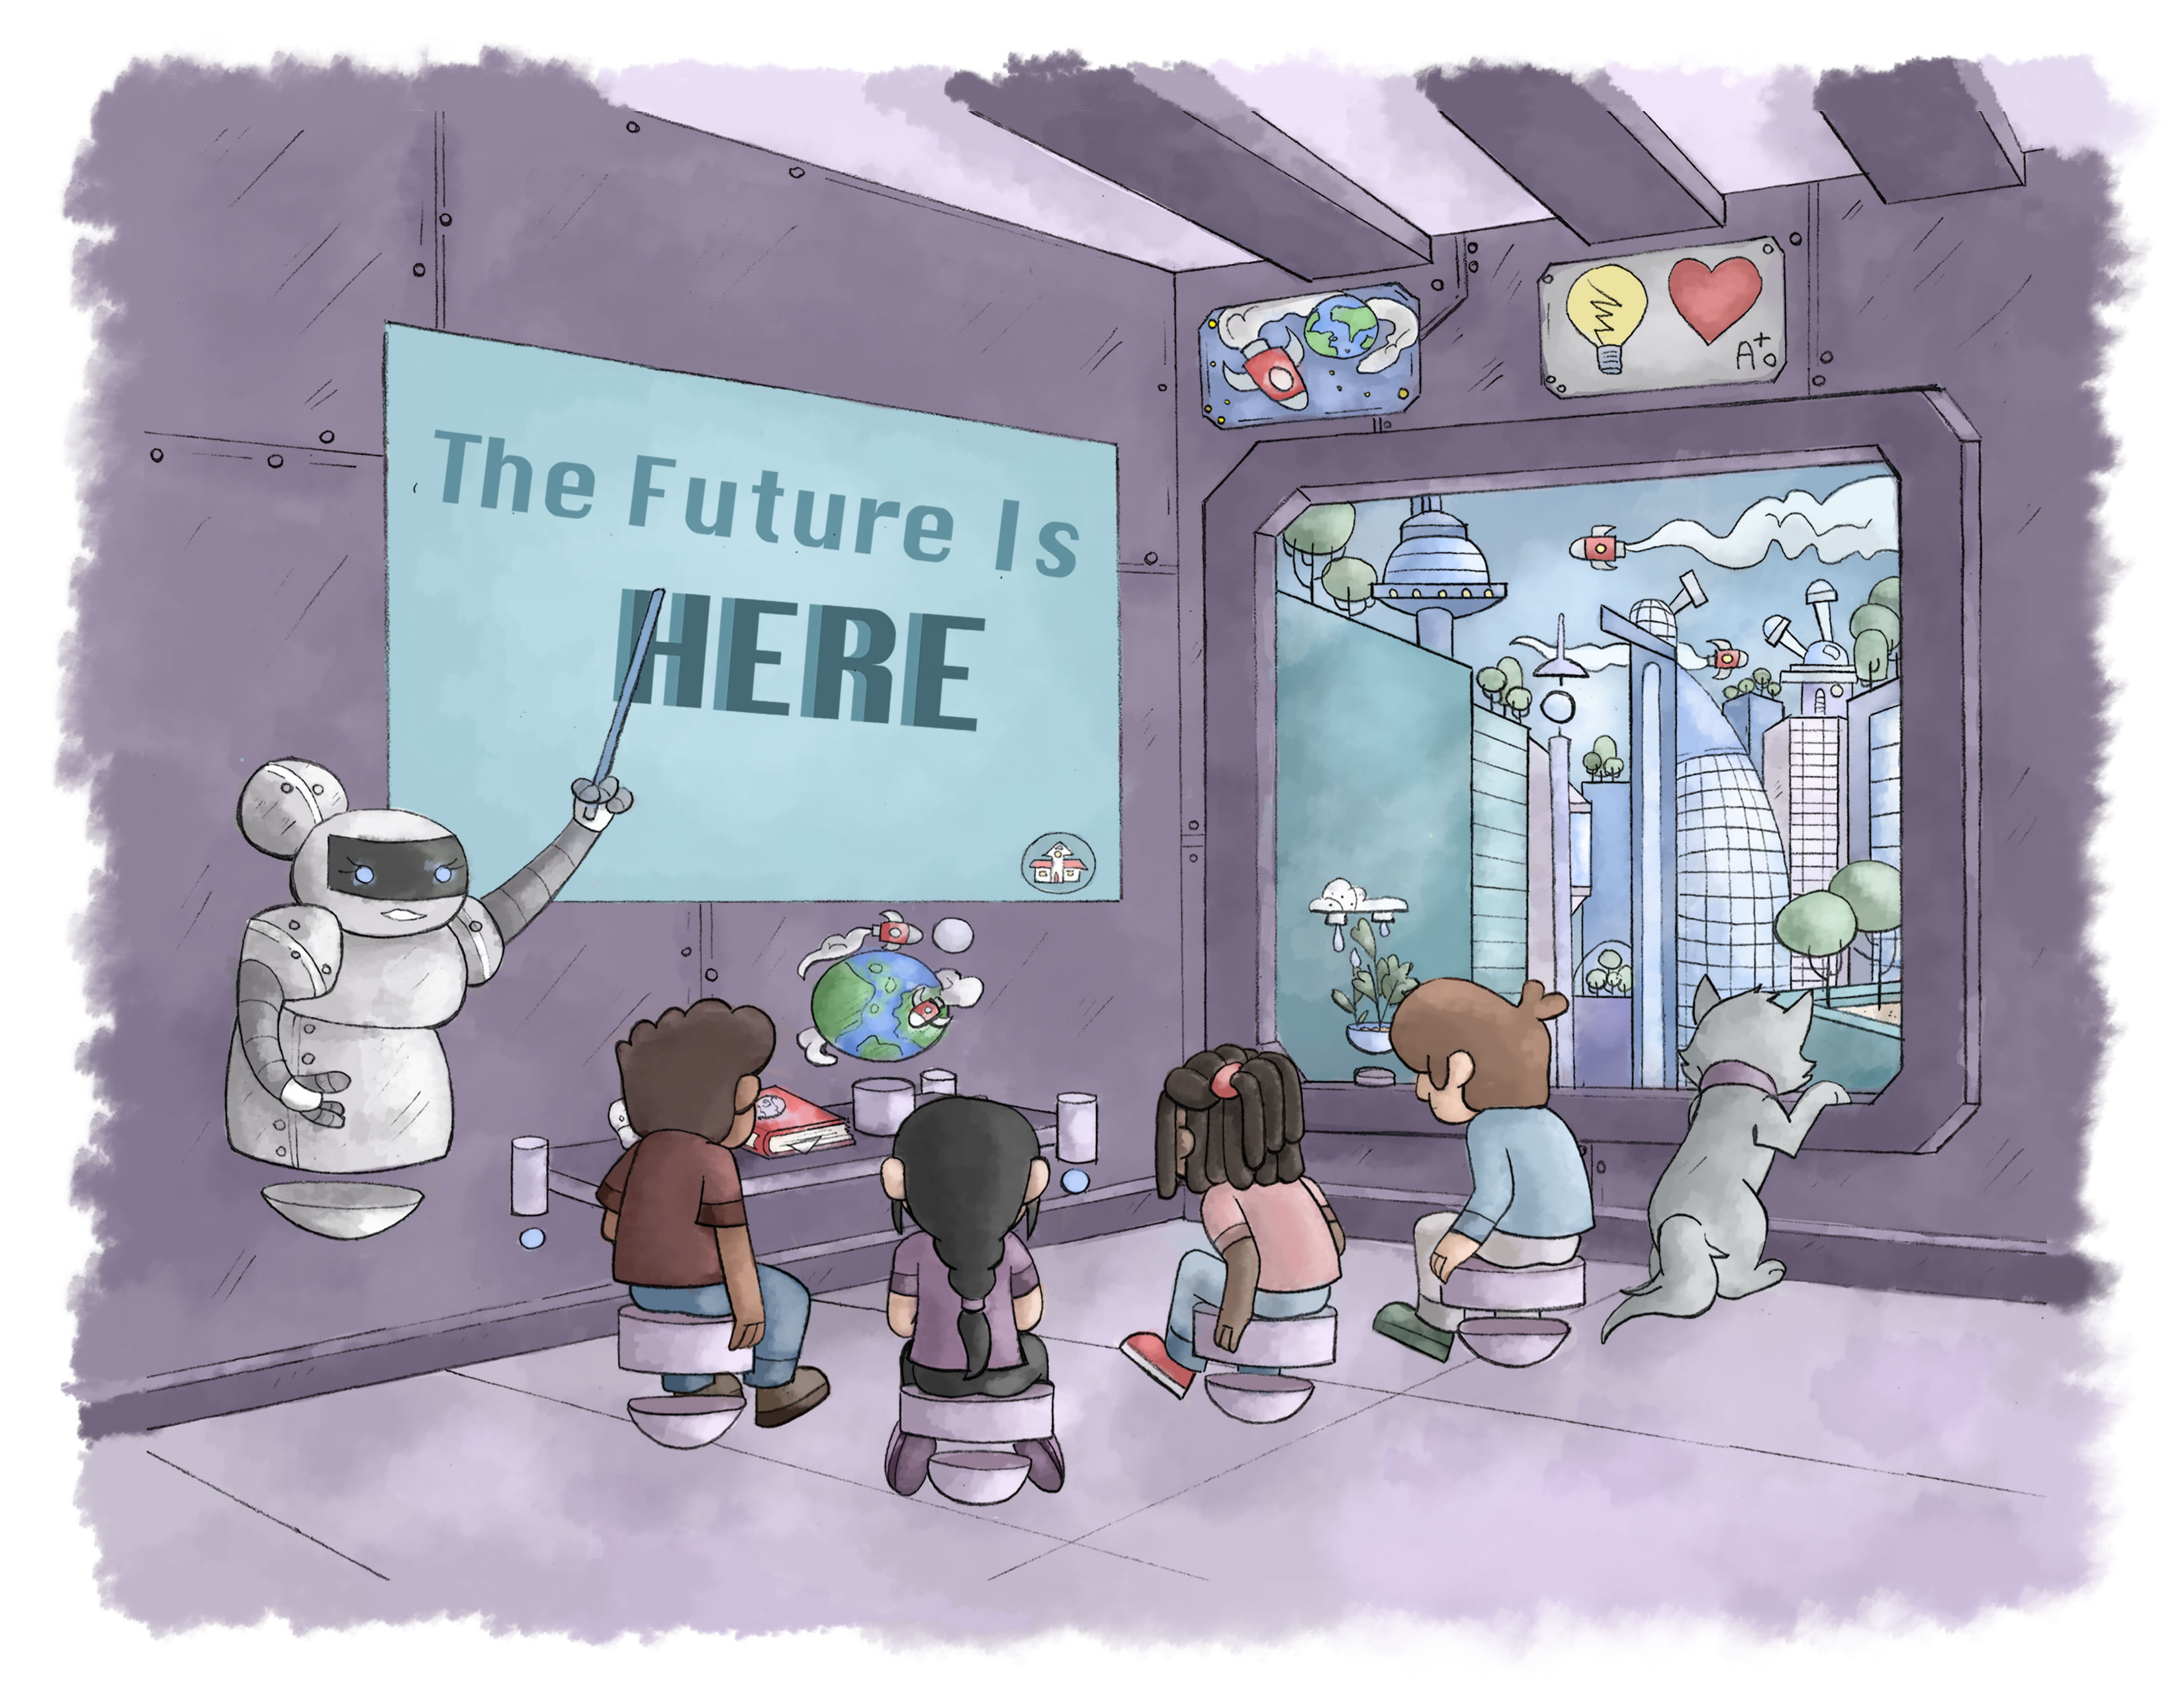 La solución, caricatura de la sala futurista de la escuela con niños y gatos mirando por la ventana.